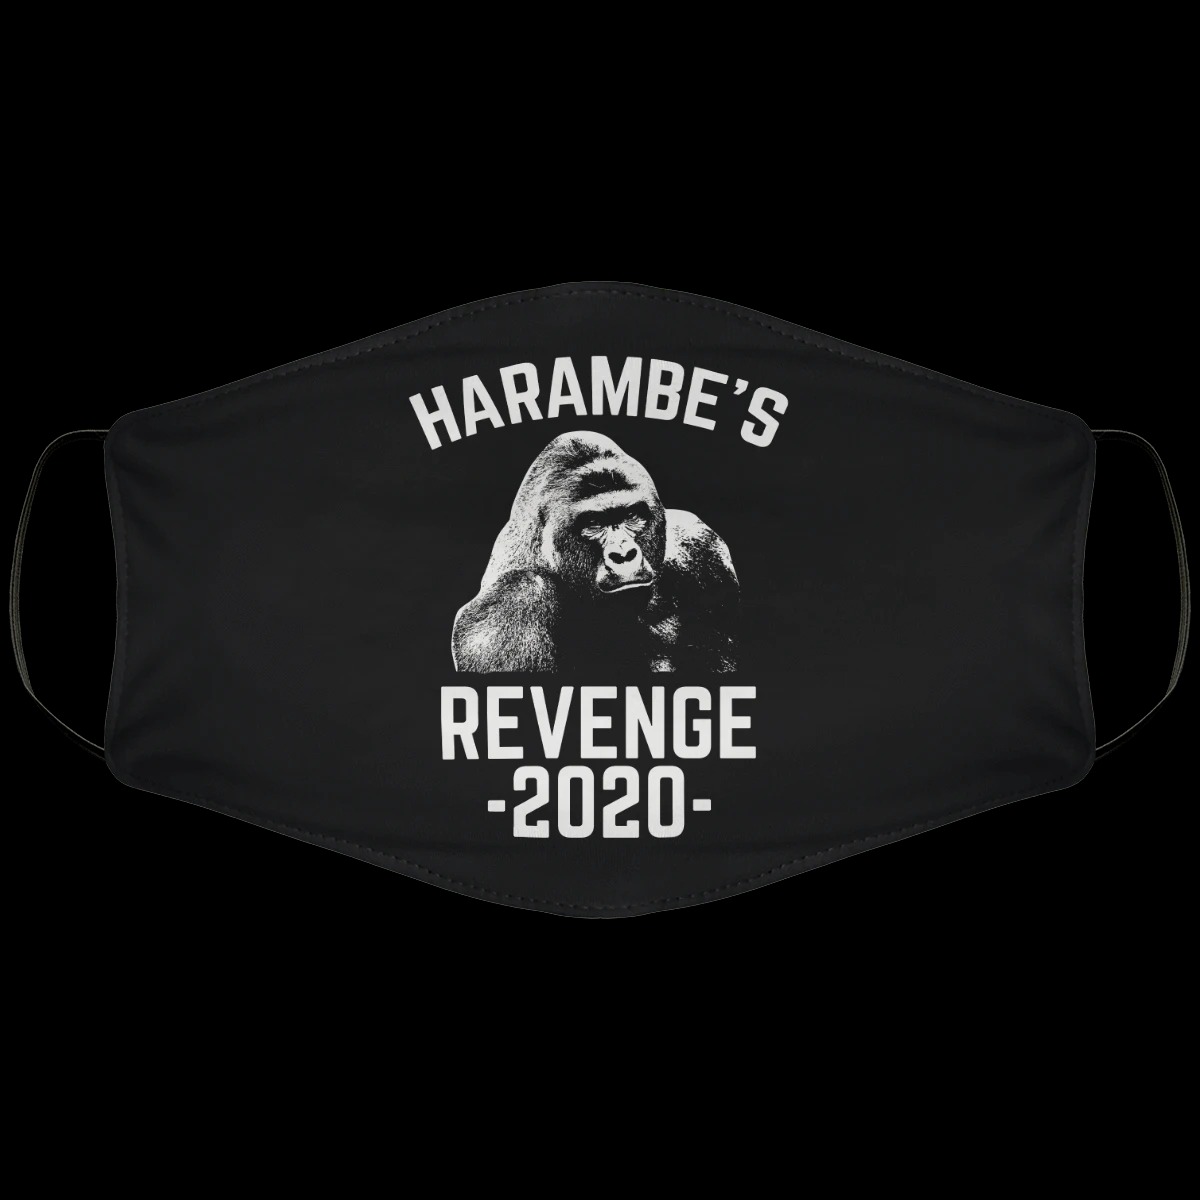 Harambe's revenge 2020 face mask